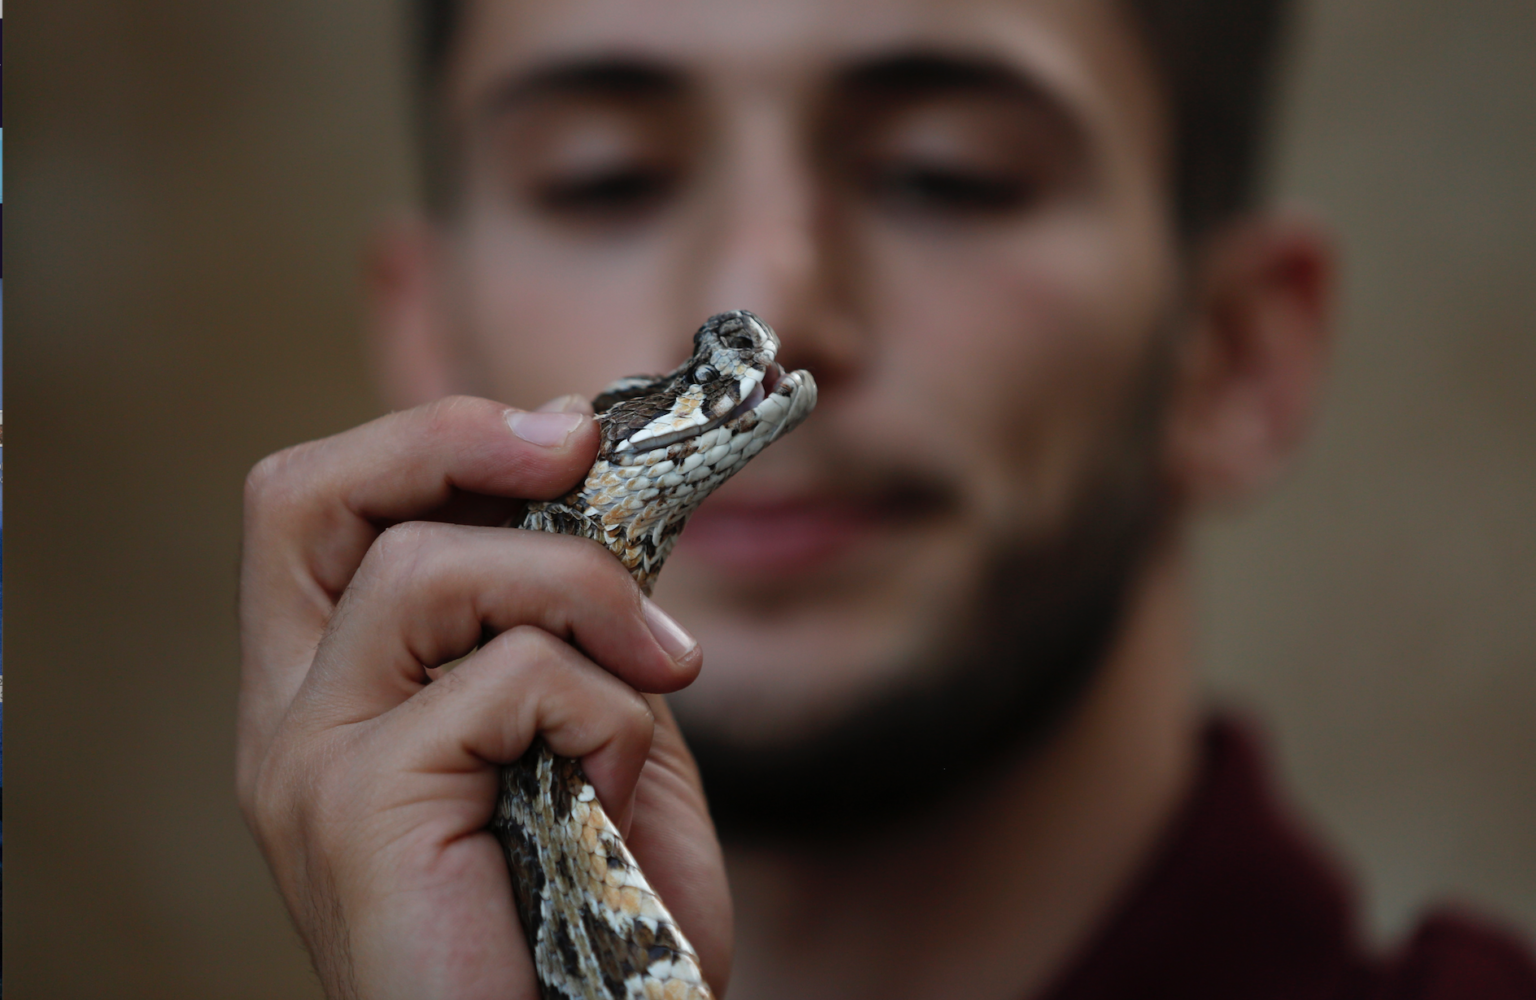 شاب فلسطيني يربي أثقل وأخطر الثعابين داخل منزله في مشهد خارج عن المألوف